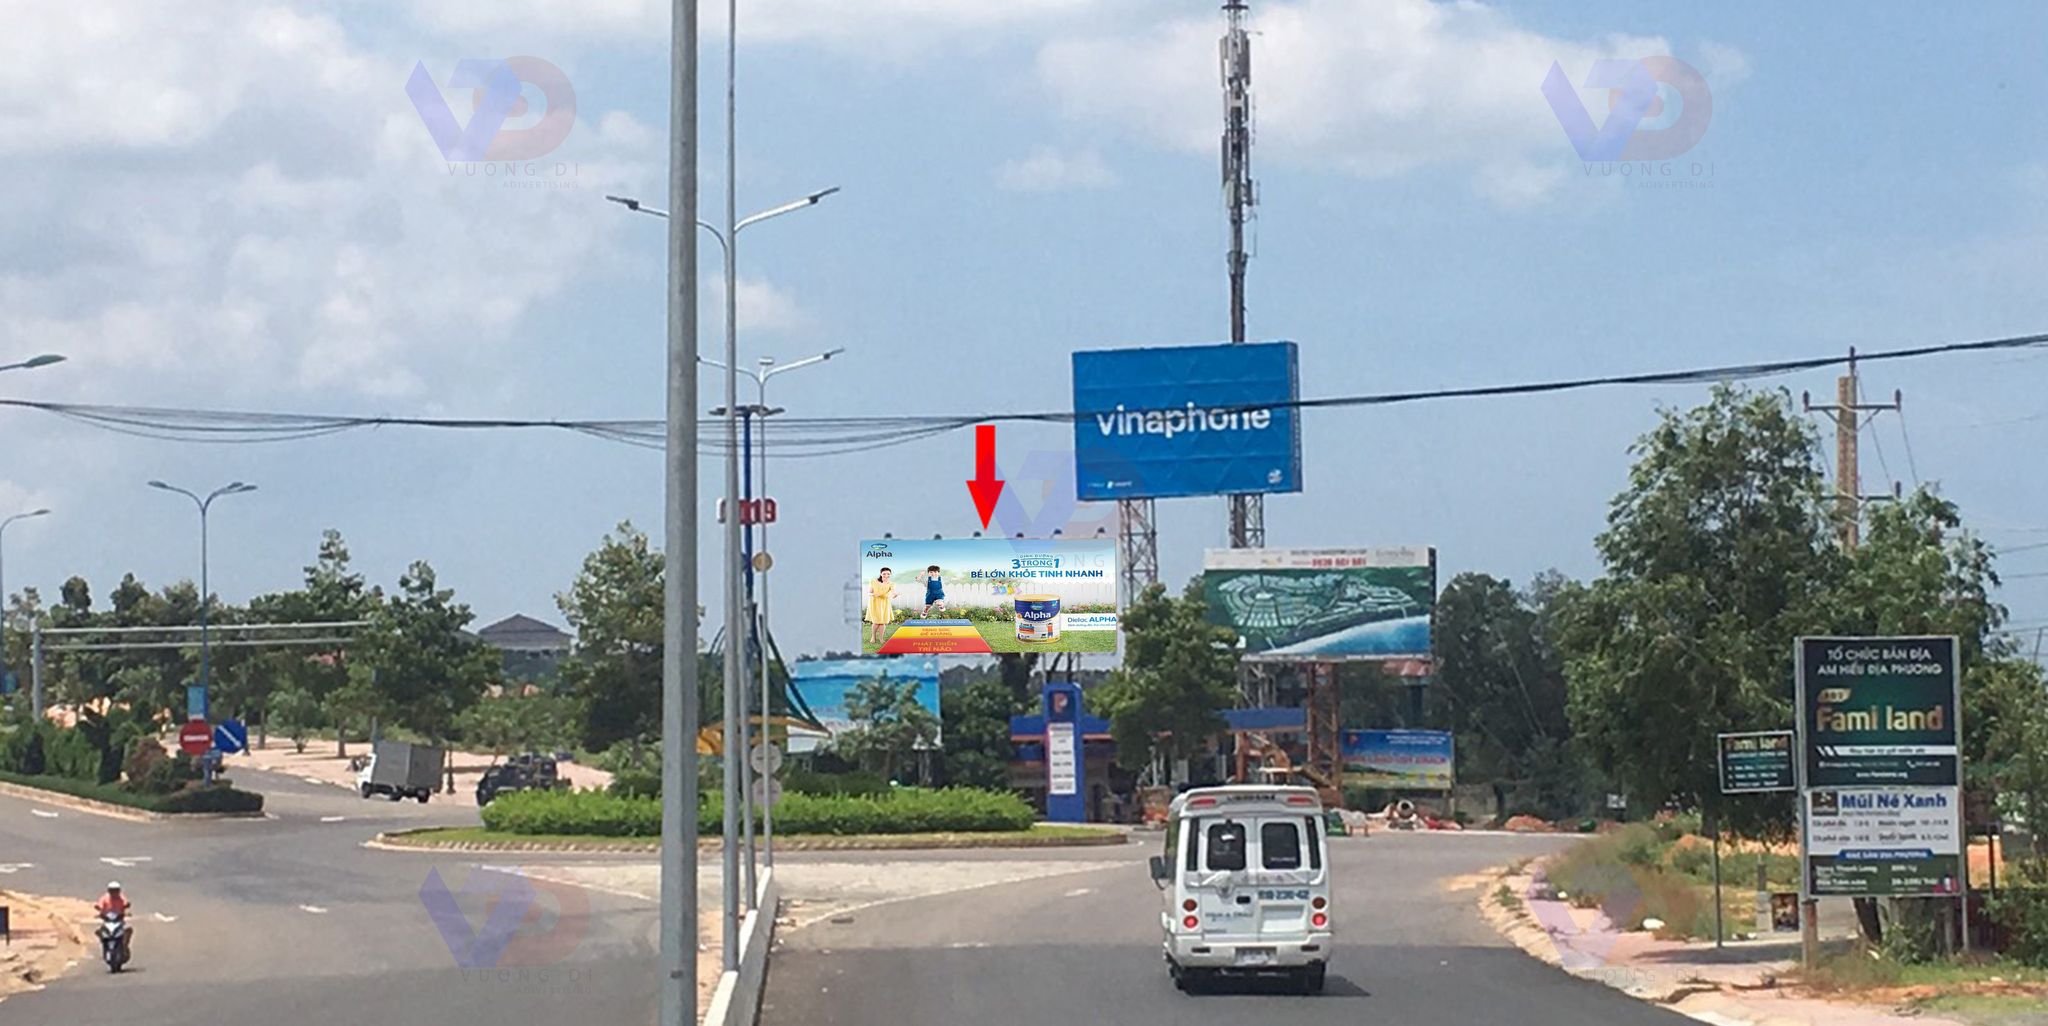 Bảng quảng cáo tại Ngã 3 Phu Hài, Phường Phú Hài, TP Phan Thiết, Bình Thuận